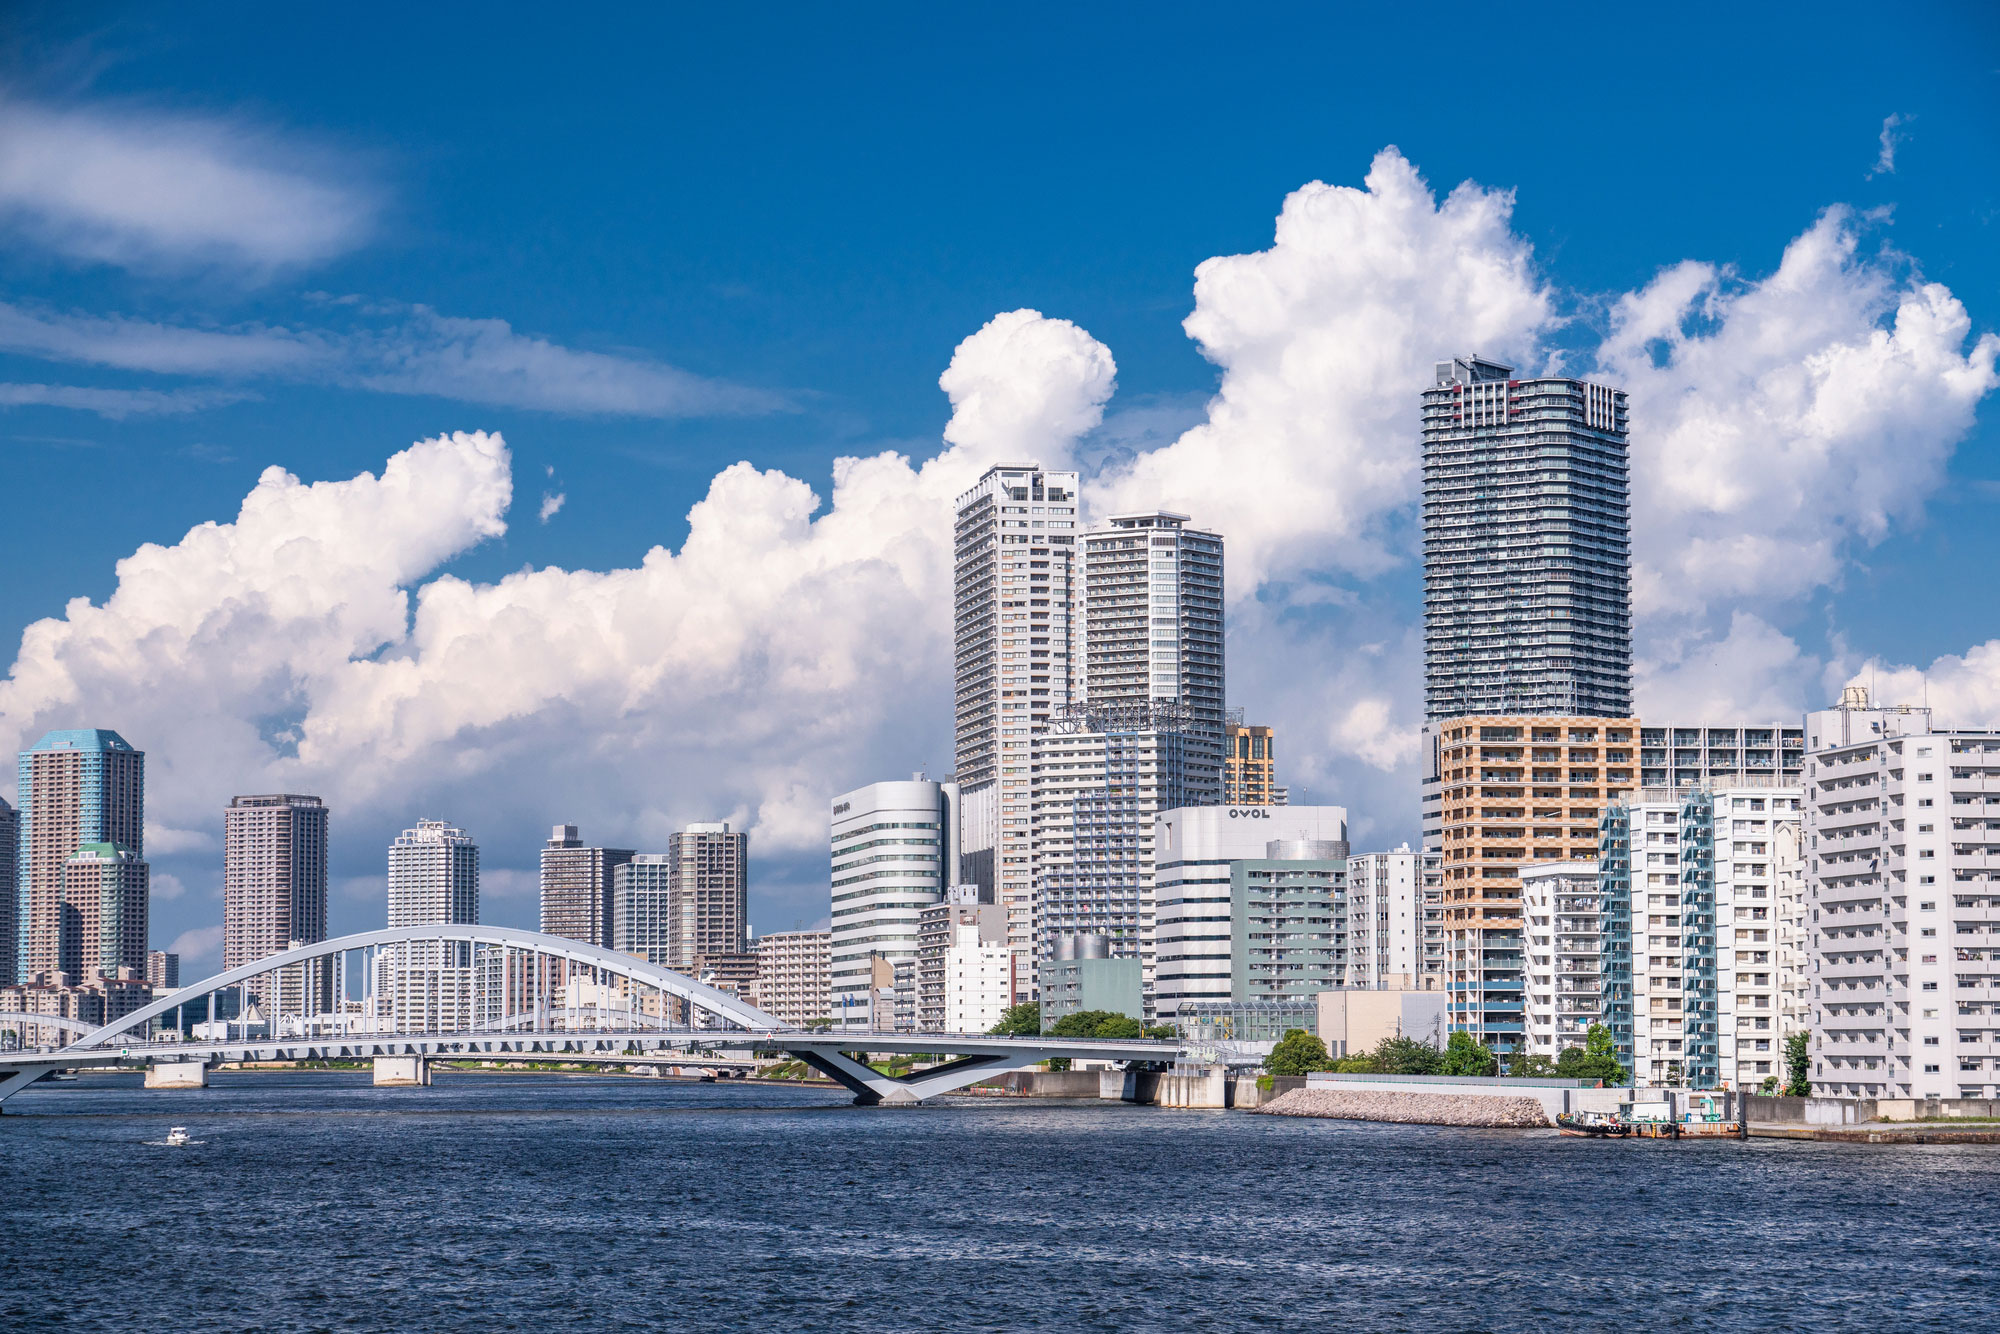 東京ベイエリア・タワーマンション群と夏の空